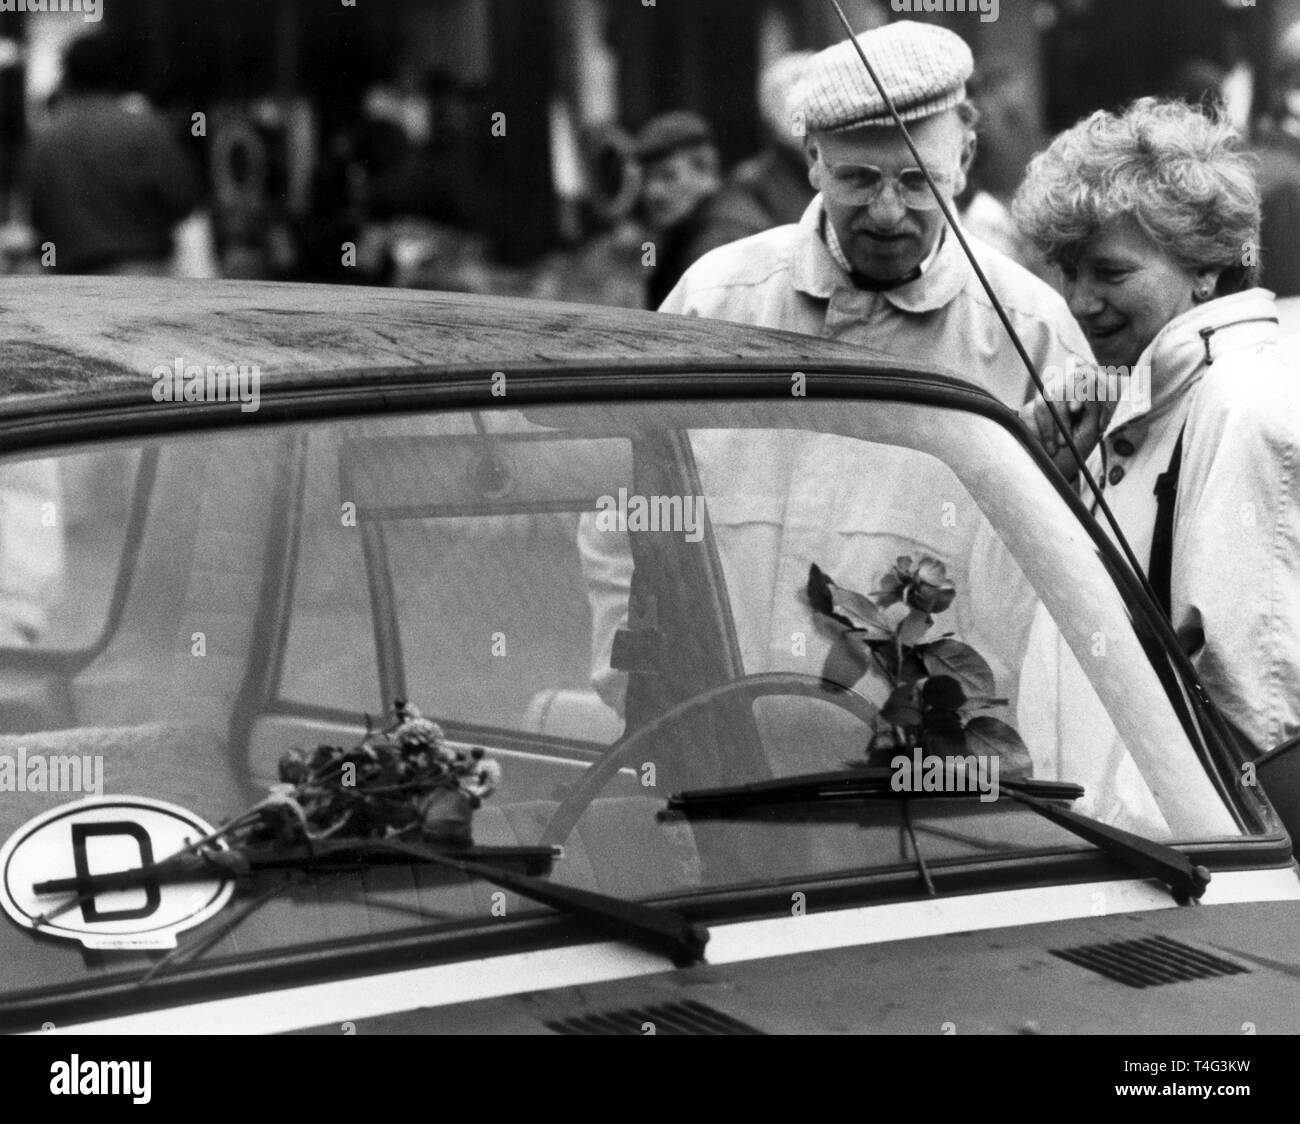 Das Auto eines DDR-Bürger ist mit Blumen und einem D-Sticker, dargestellt in Lübeck am 10.11.1989 eingerichtet. Hunderte von Tausenden von DDR-Bürgern in die Bundesrepublik reiste für einen kurzen Besuch nach der Öffnung der innerdeutschen Grenze am 09/10 November 1989. | Verwendung weltweit Stockfoto